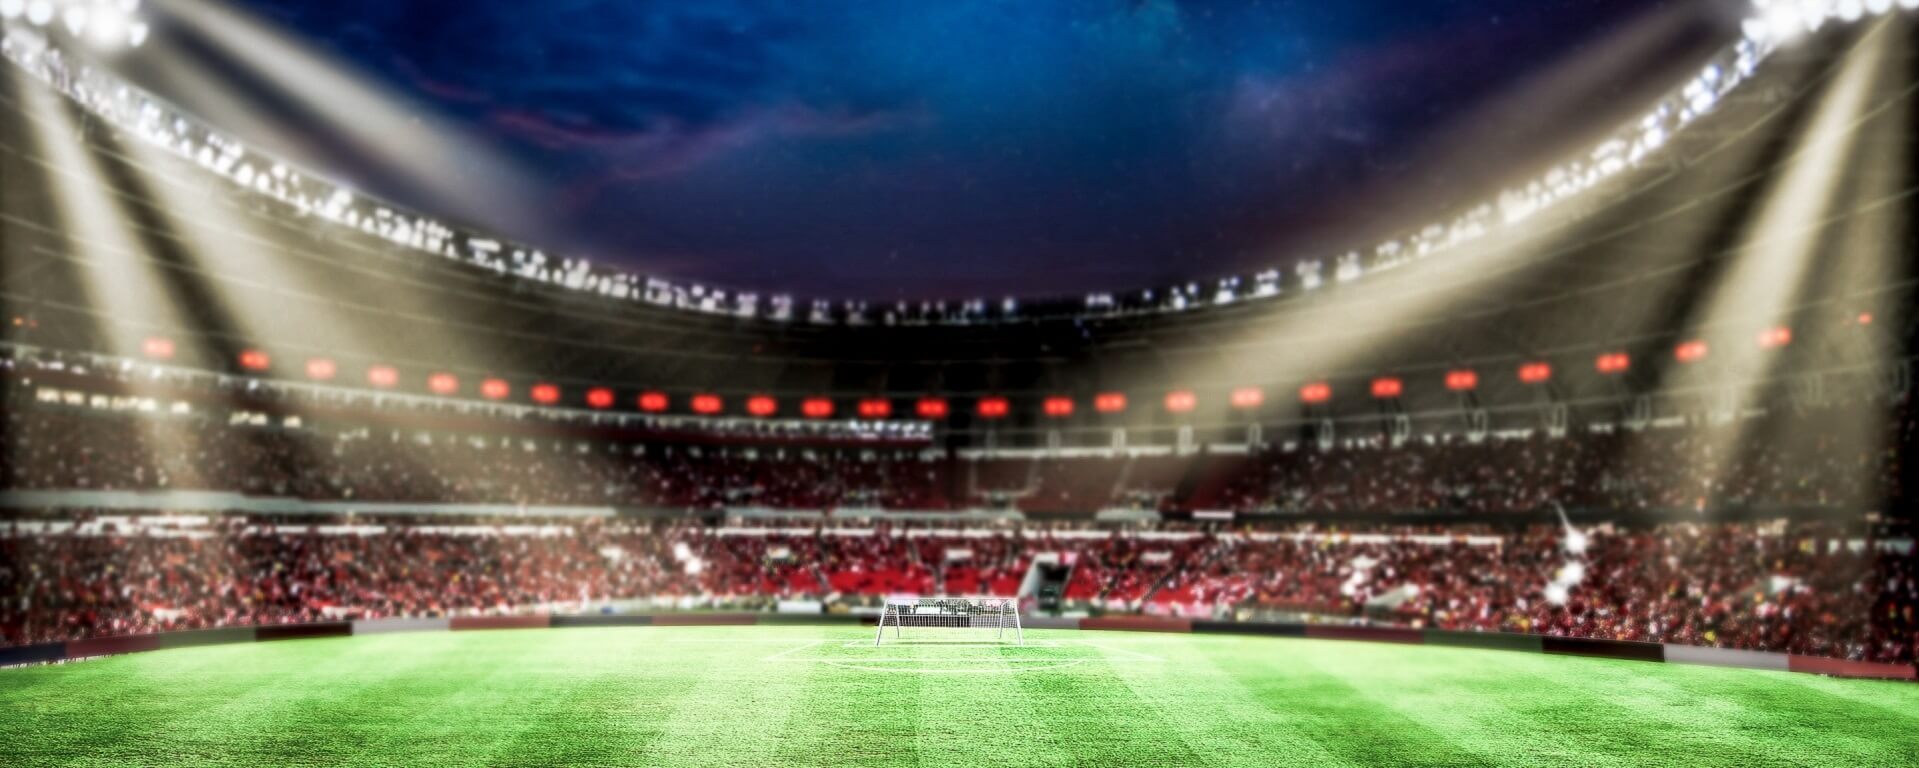 Fußballstadion - was kann man von der Gastronomie bei der Fußball Weltmeisterschaft 2022 erwarten?